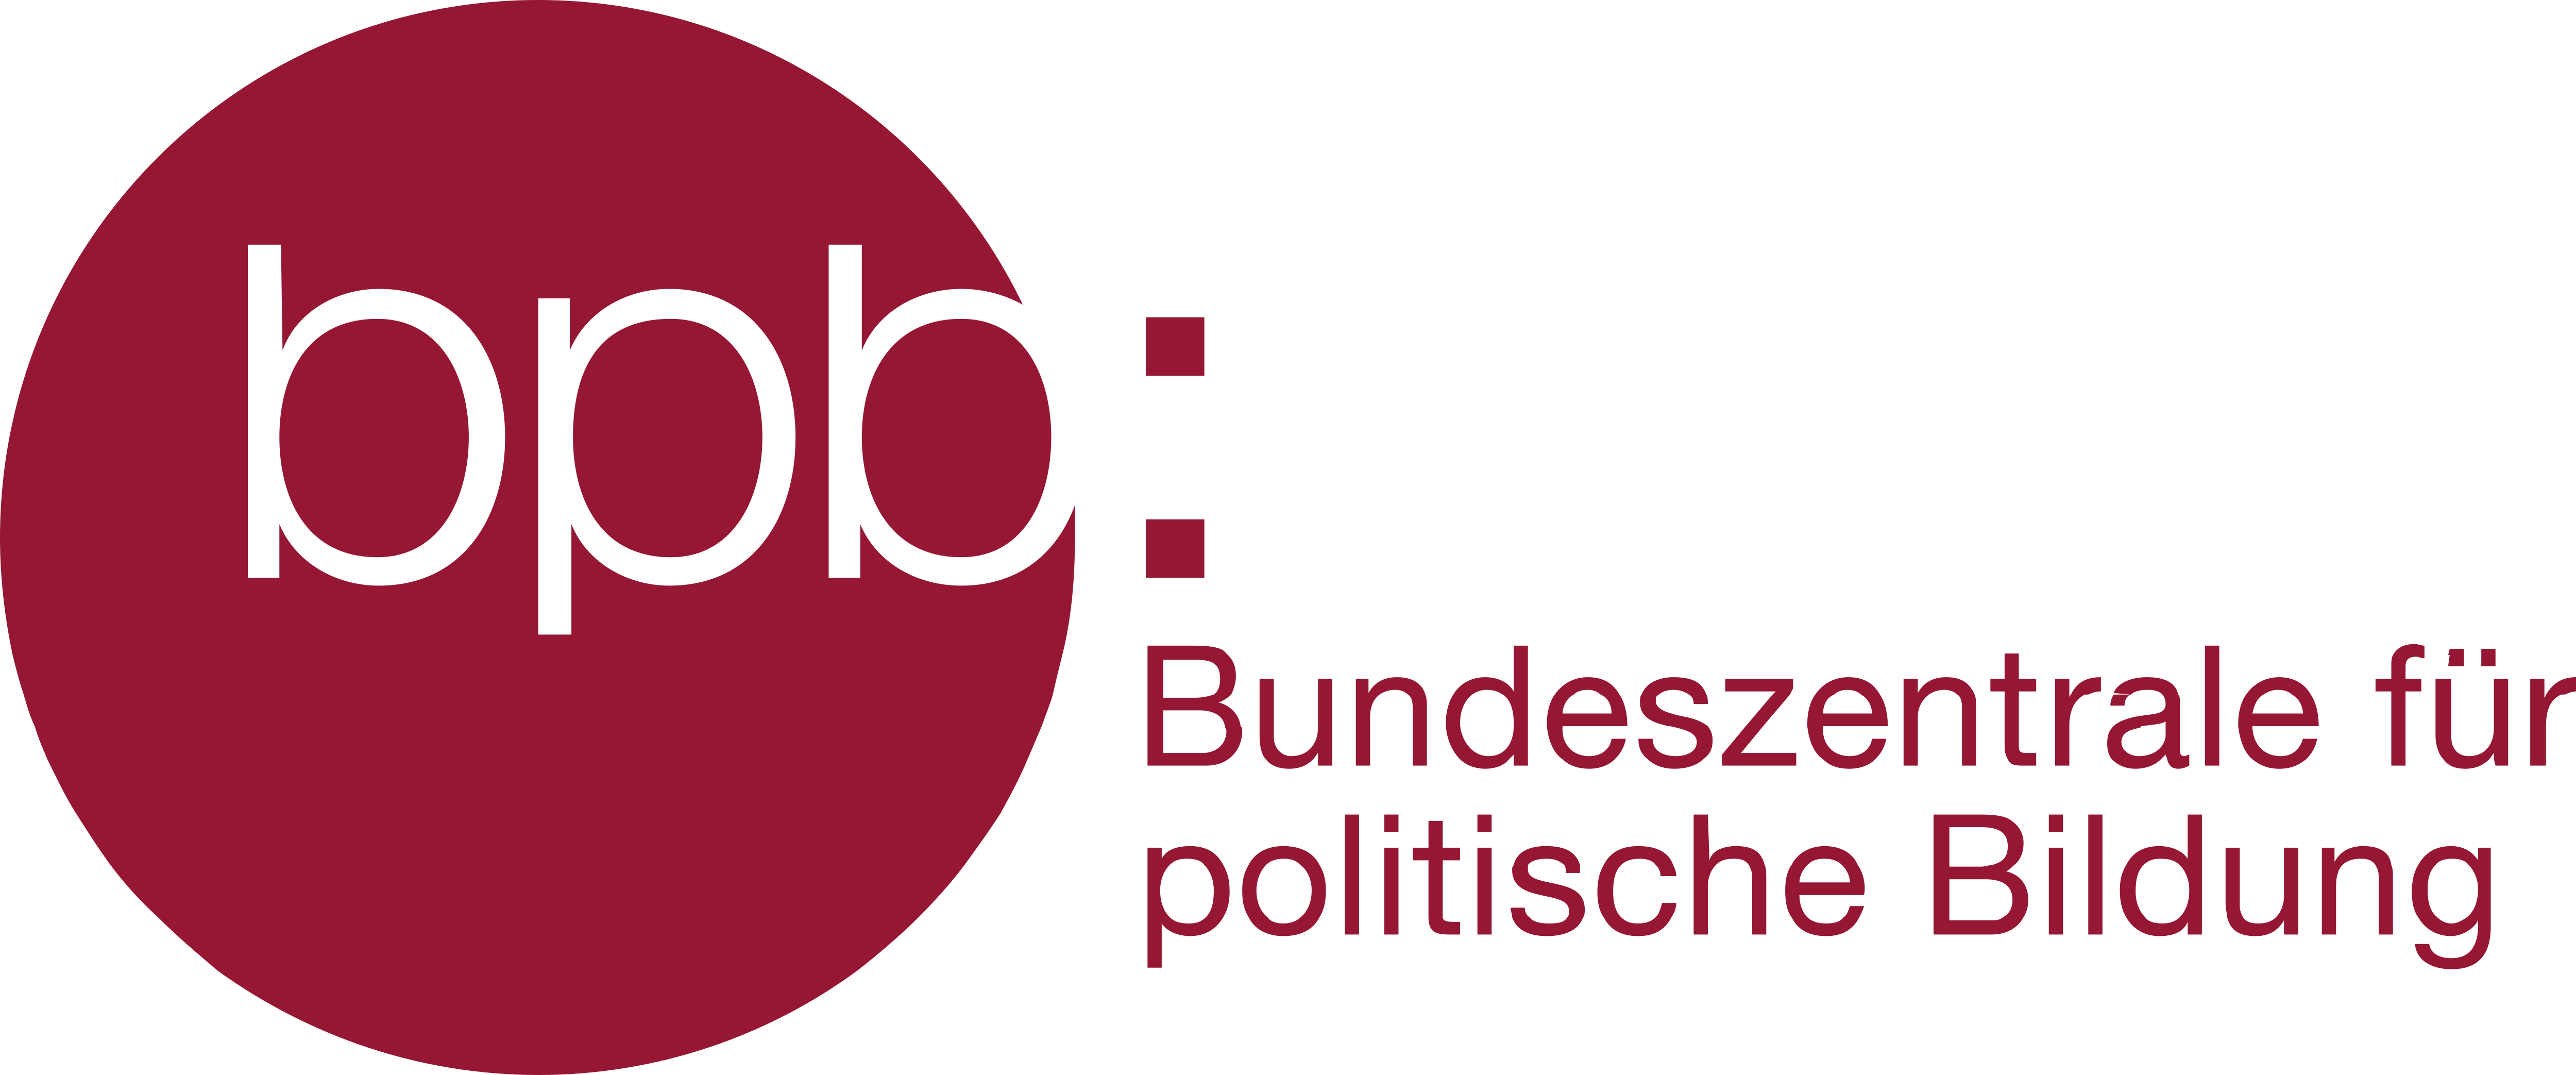 Bundeszentrale für politische Bildung Logo